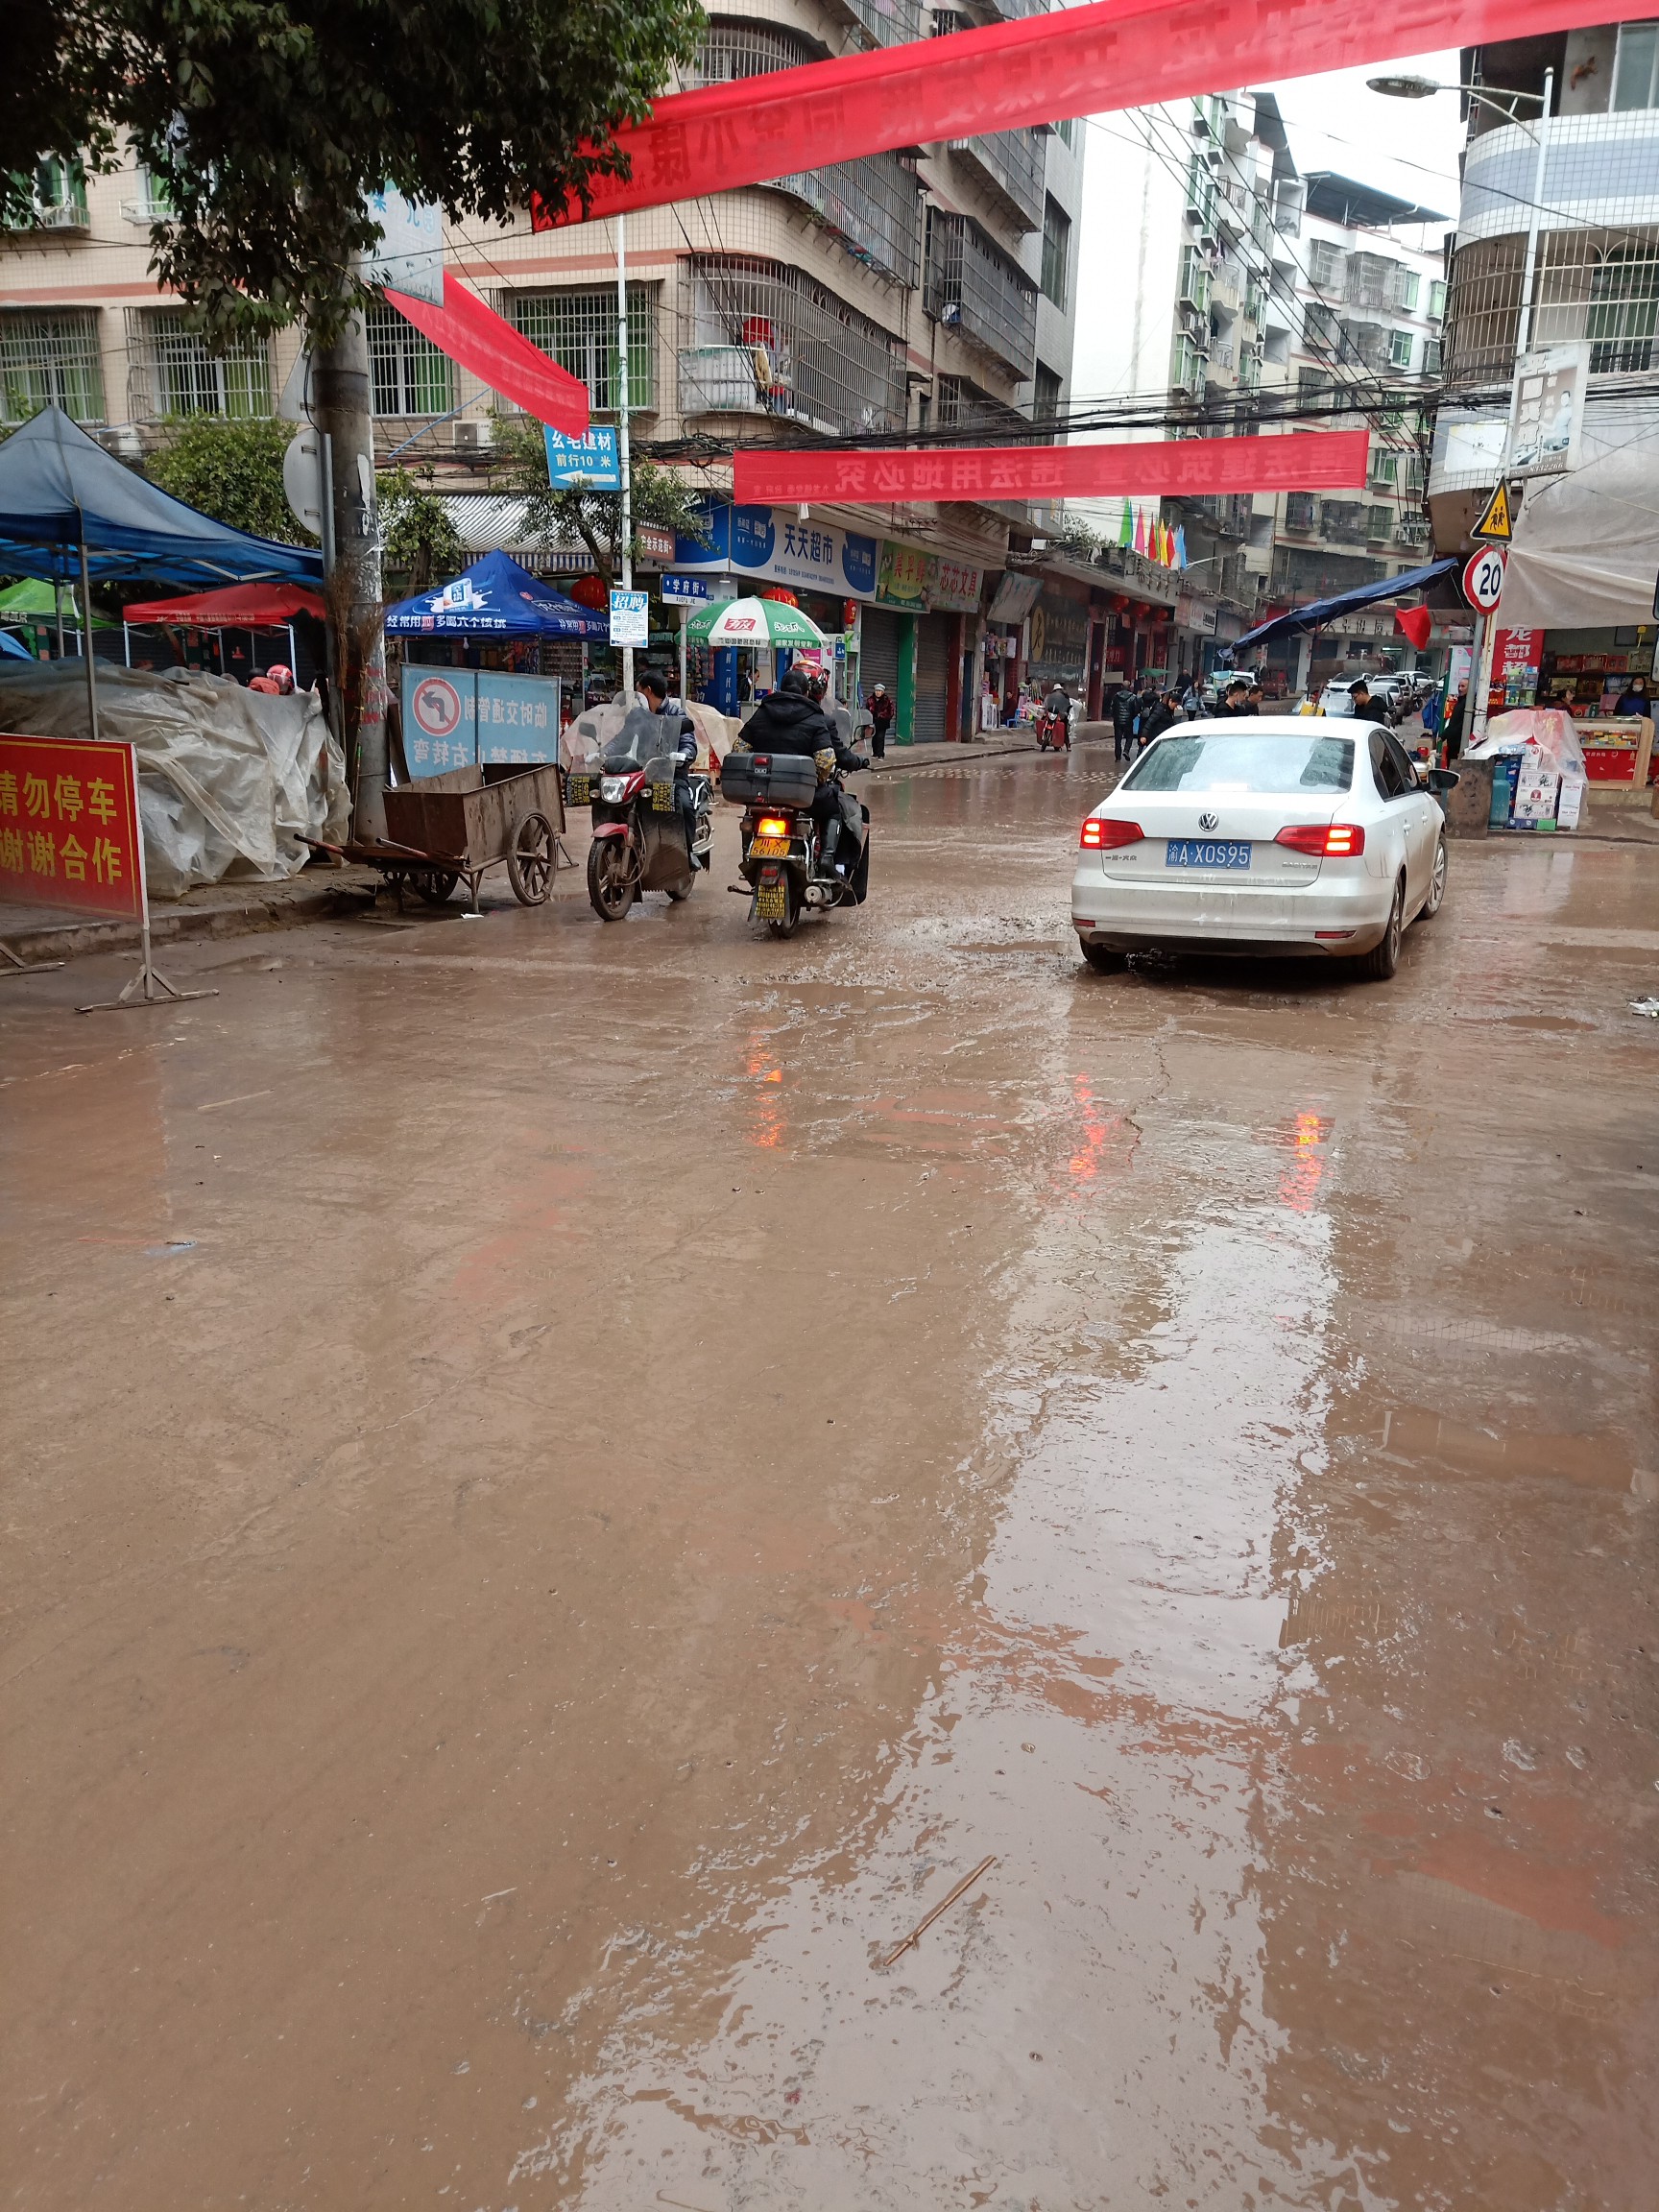 邻水九龙镇街区道路下雨天犹如在水田中行走 广安市委书记李建勤